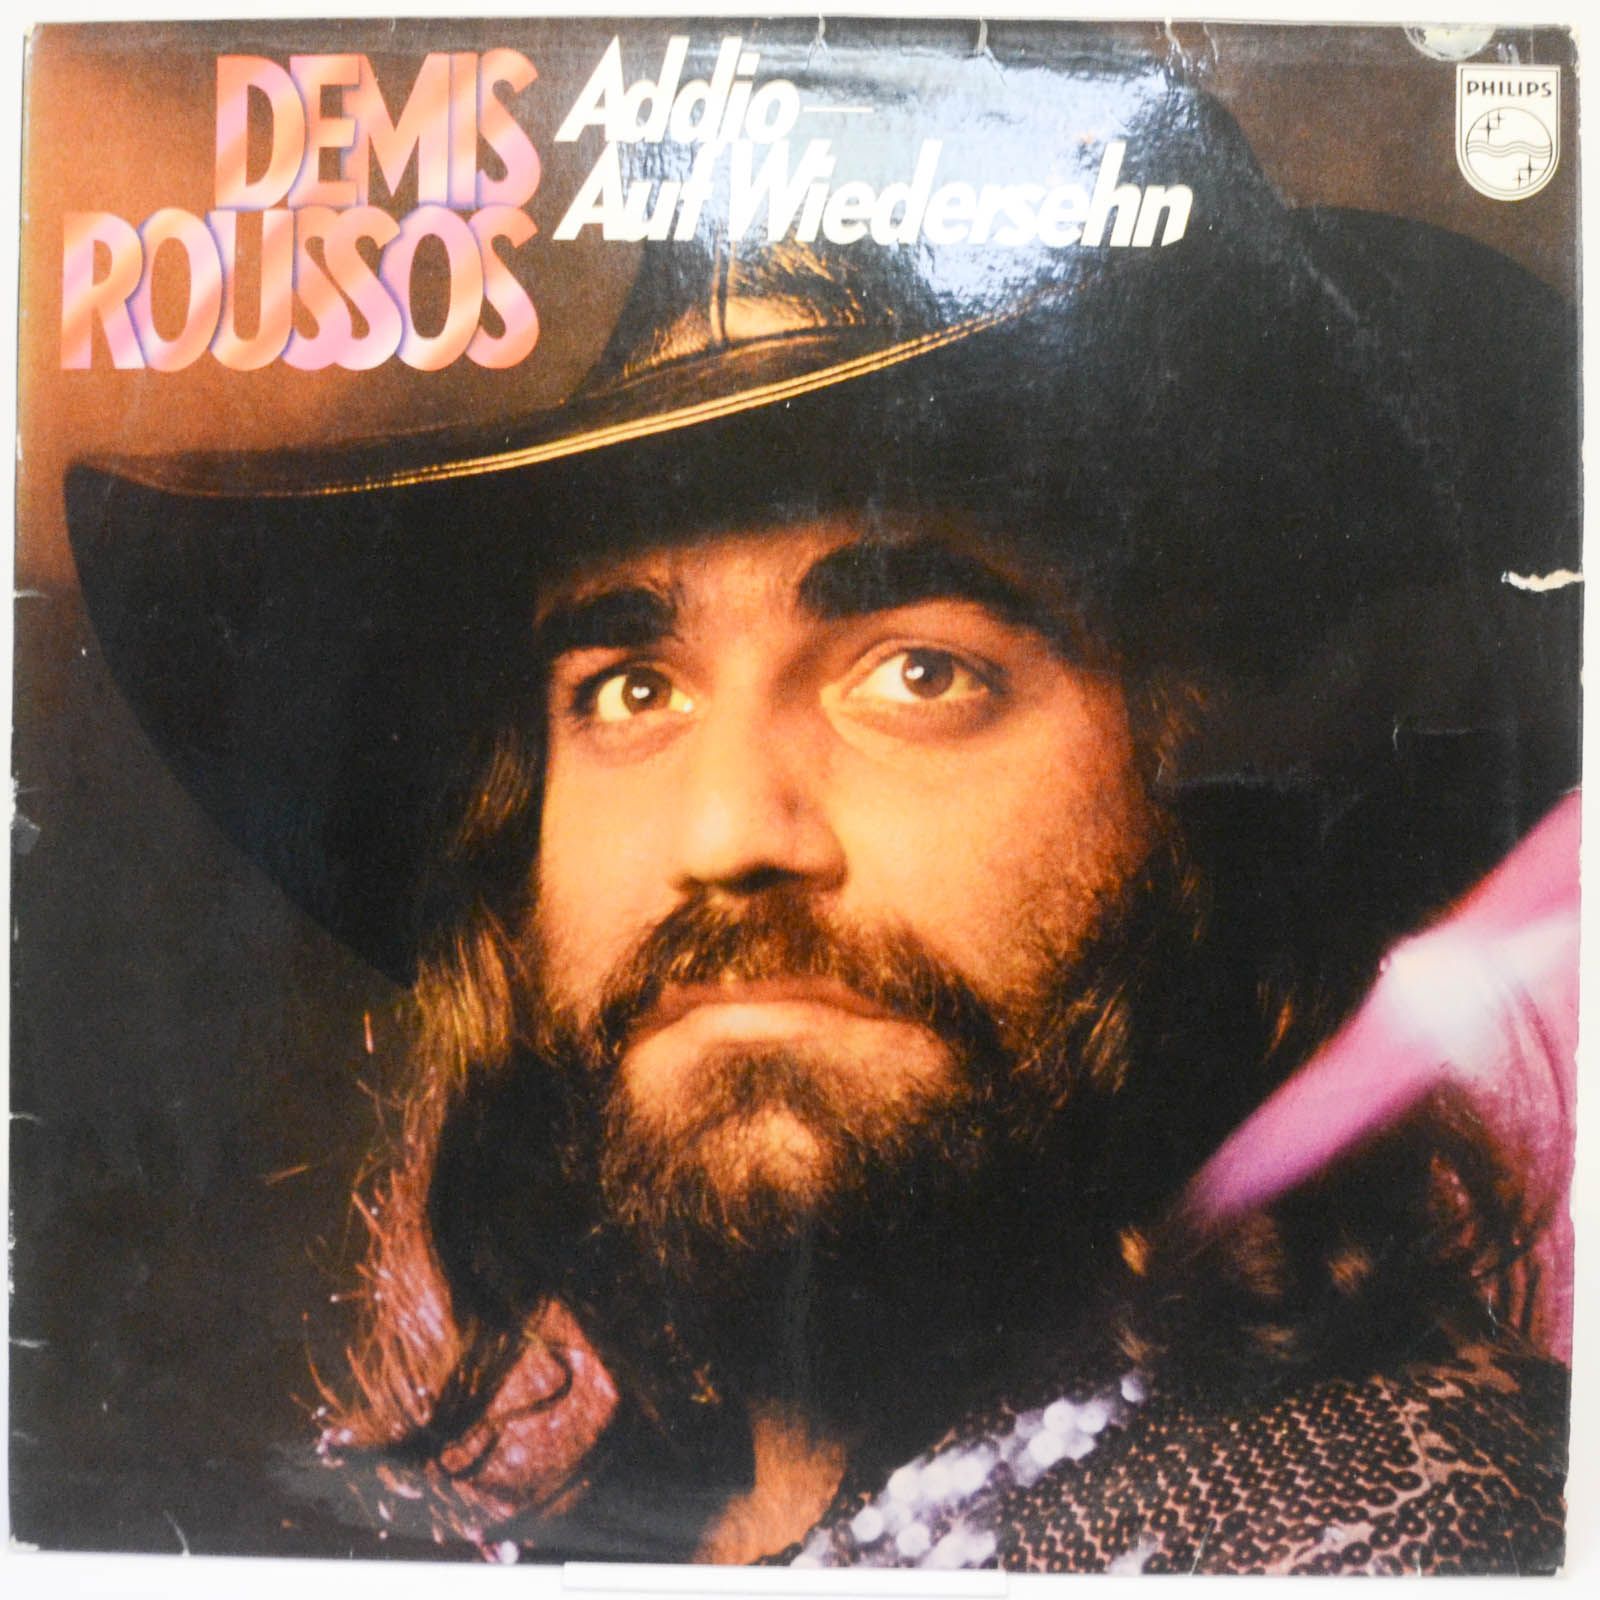 Demis Roussos — Addio - Auf Wiedersehn, 1974